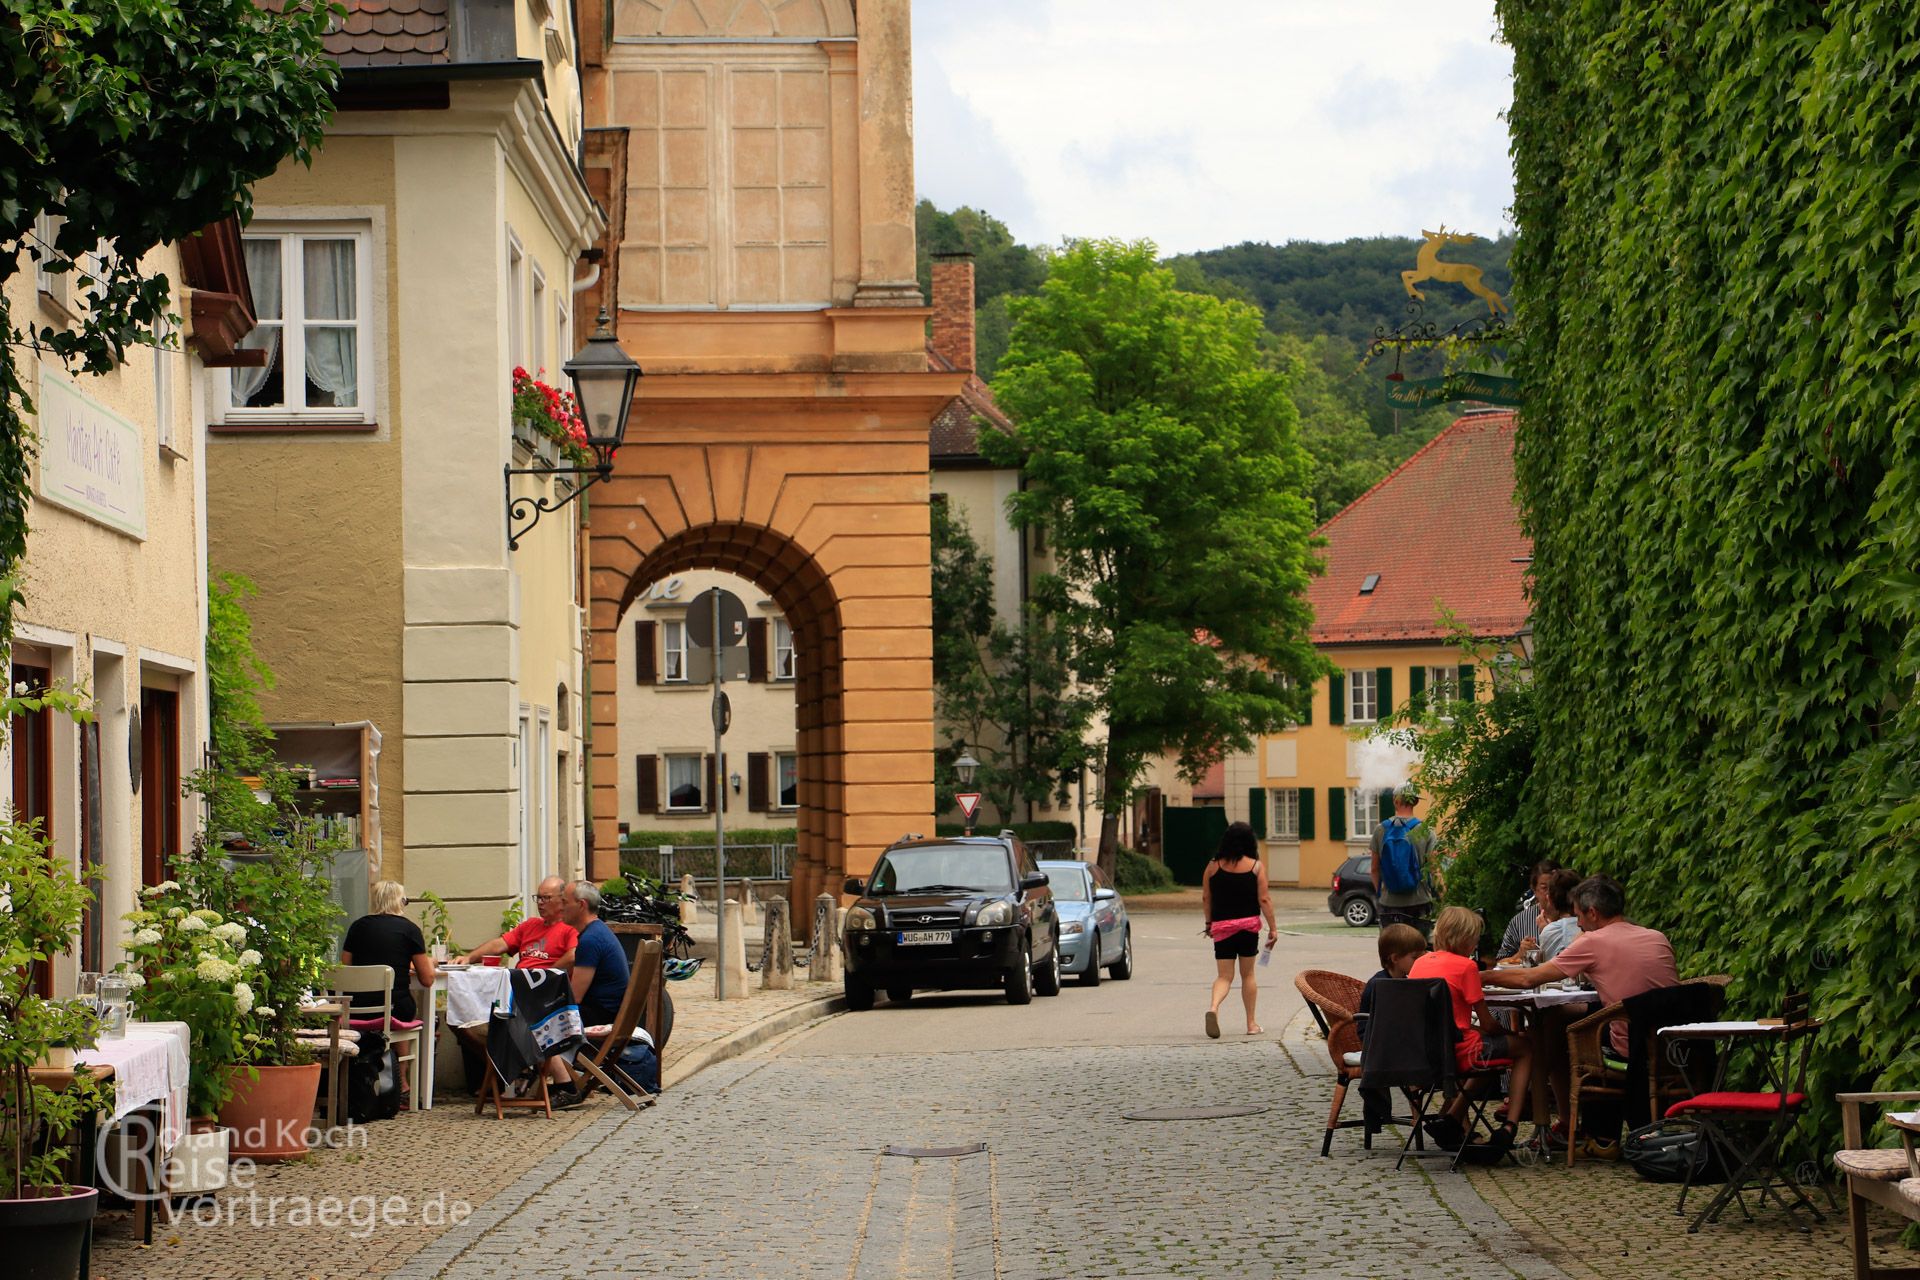 Altmühl Radweg, Cafes in der altstadt von Pappenheim